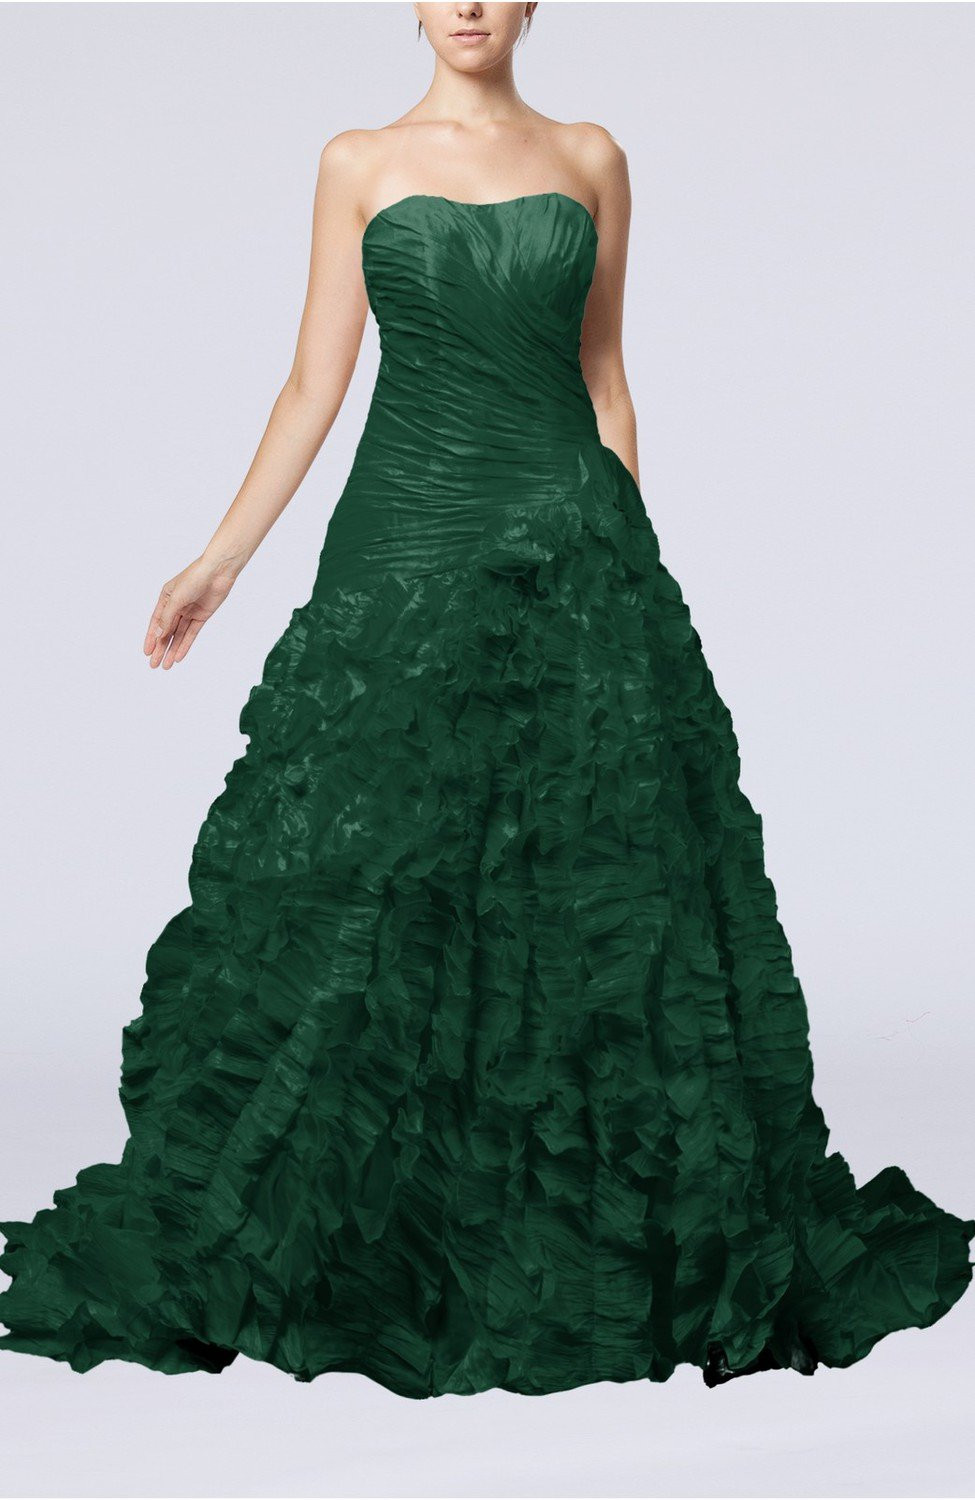 highpotentialdesigns Dark Green Dress For A Wedding Guest